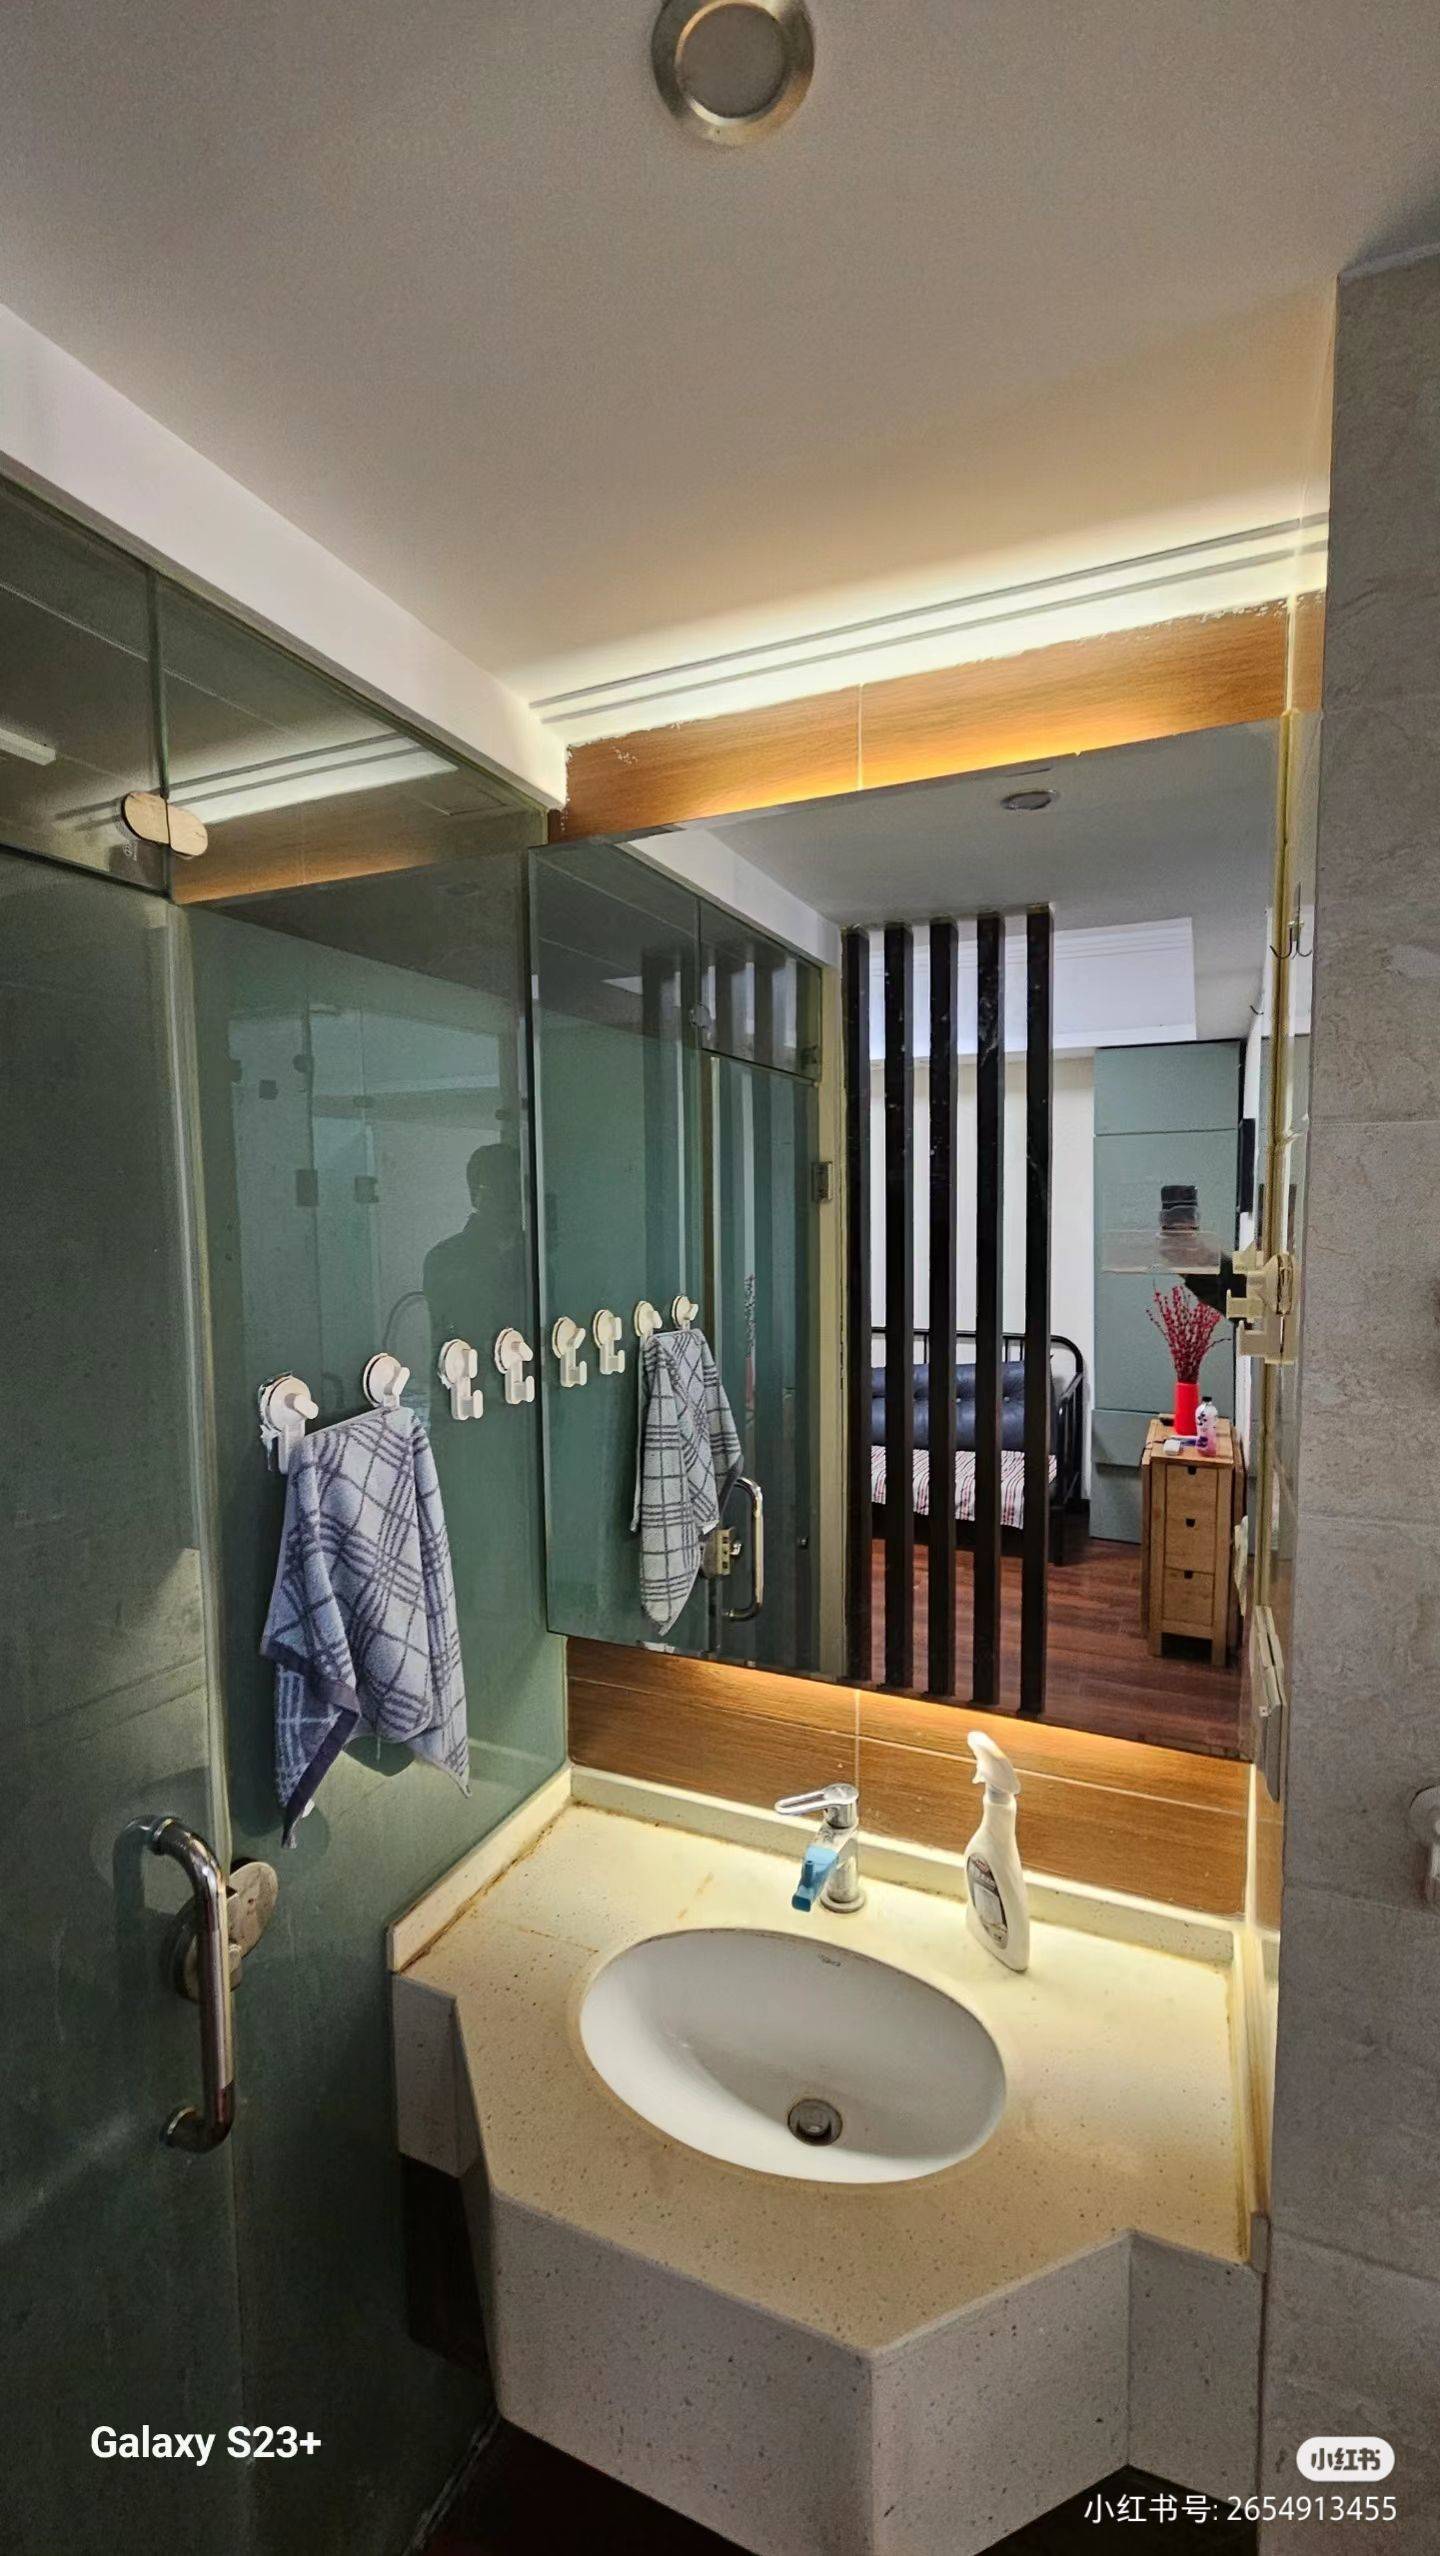 Chongqing-Jiulongpo-Cozy Home,Clean&Comfy,No Gender Limit